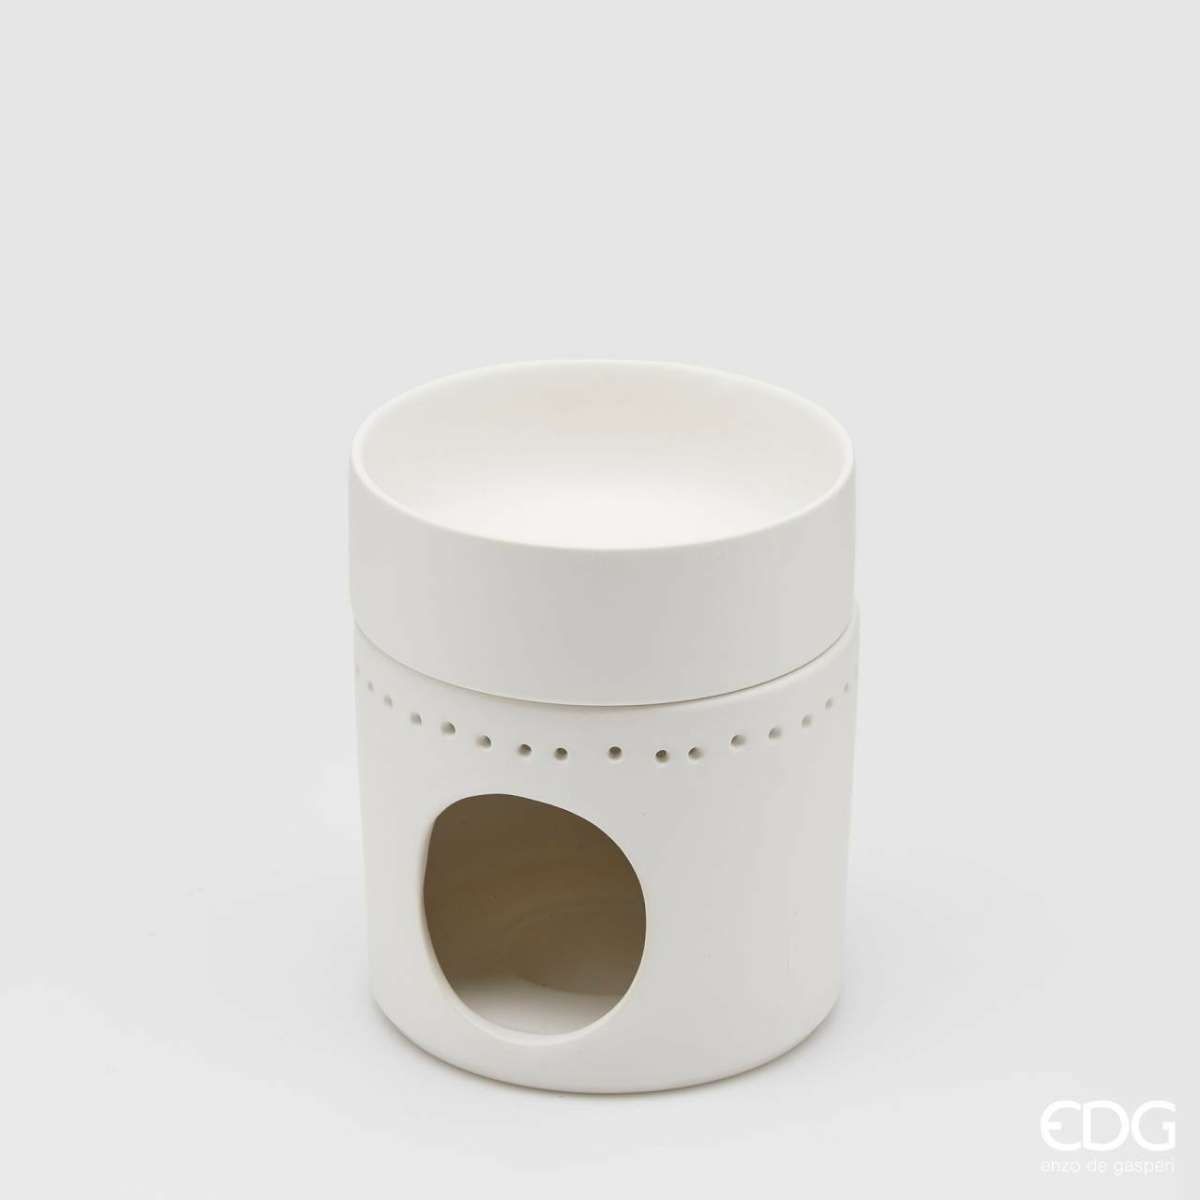 Immagine del prodotto Diffusore Oli essenziali Design in ceramica Bianca | EDG Enzo De Gasperi